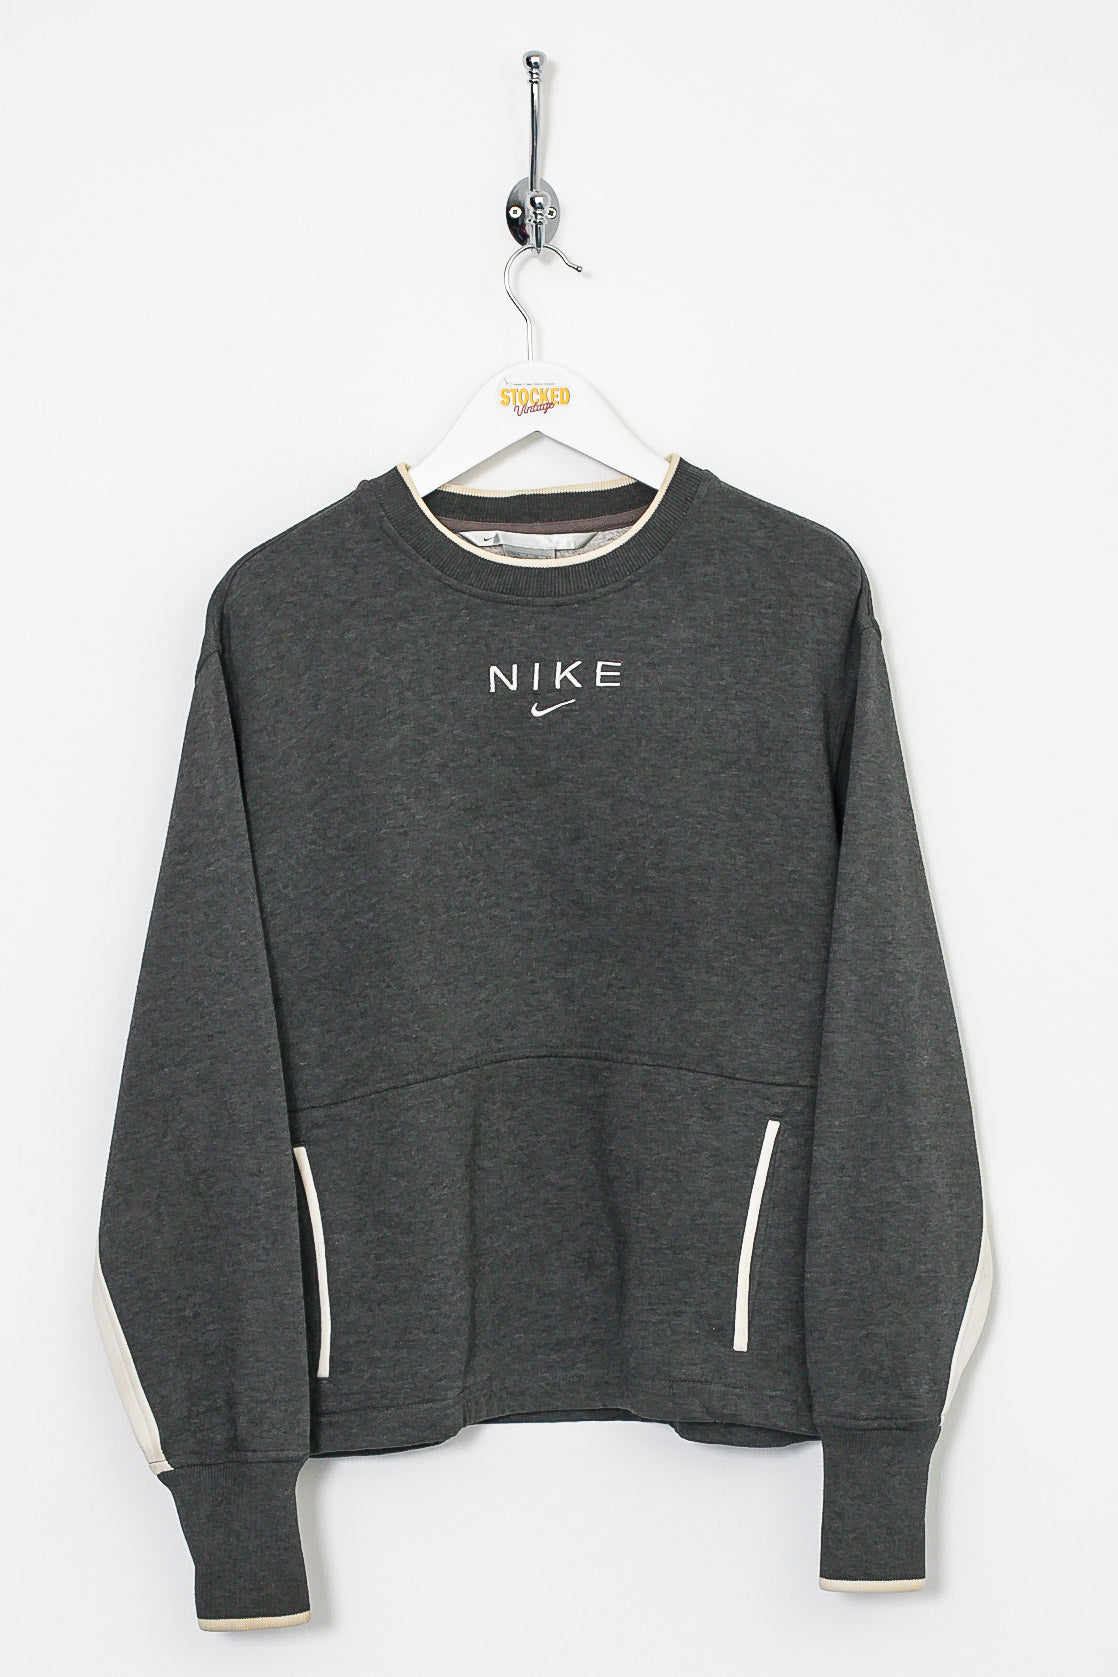 Womens Nike Sweatshirt (S)